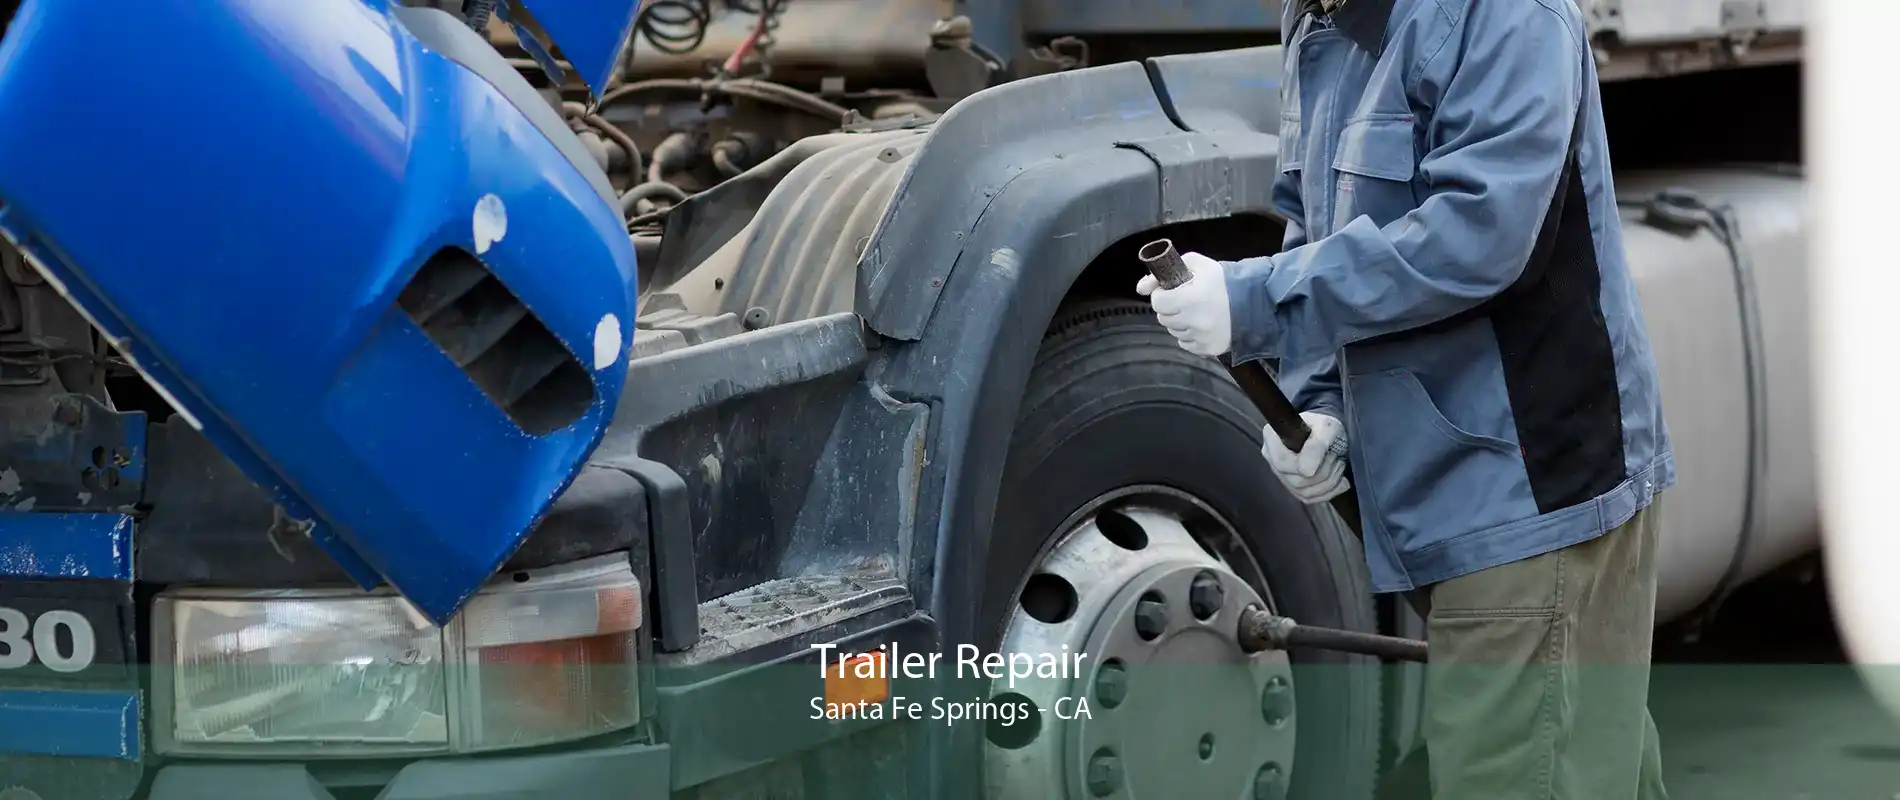 Trailer Repair Santa Fe Springs - CA